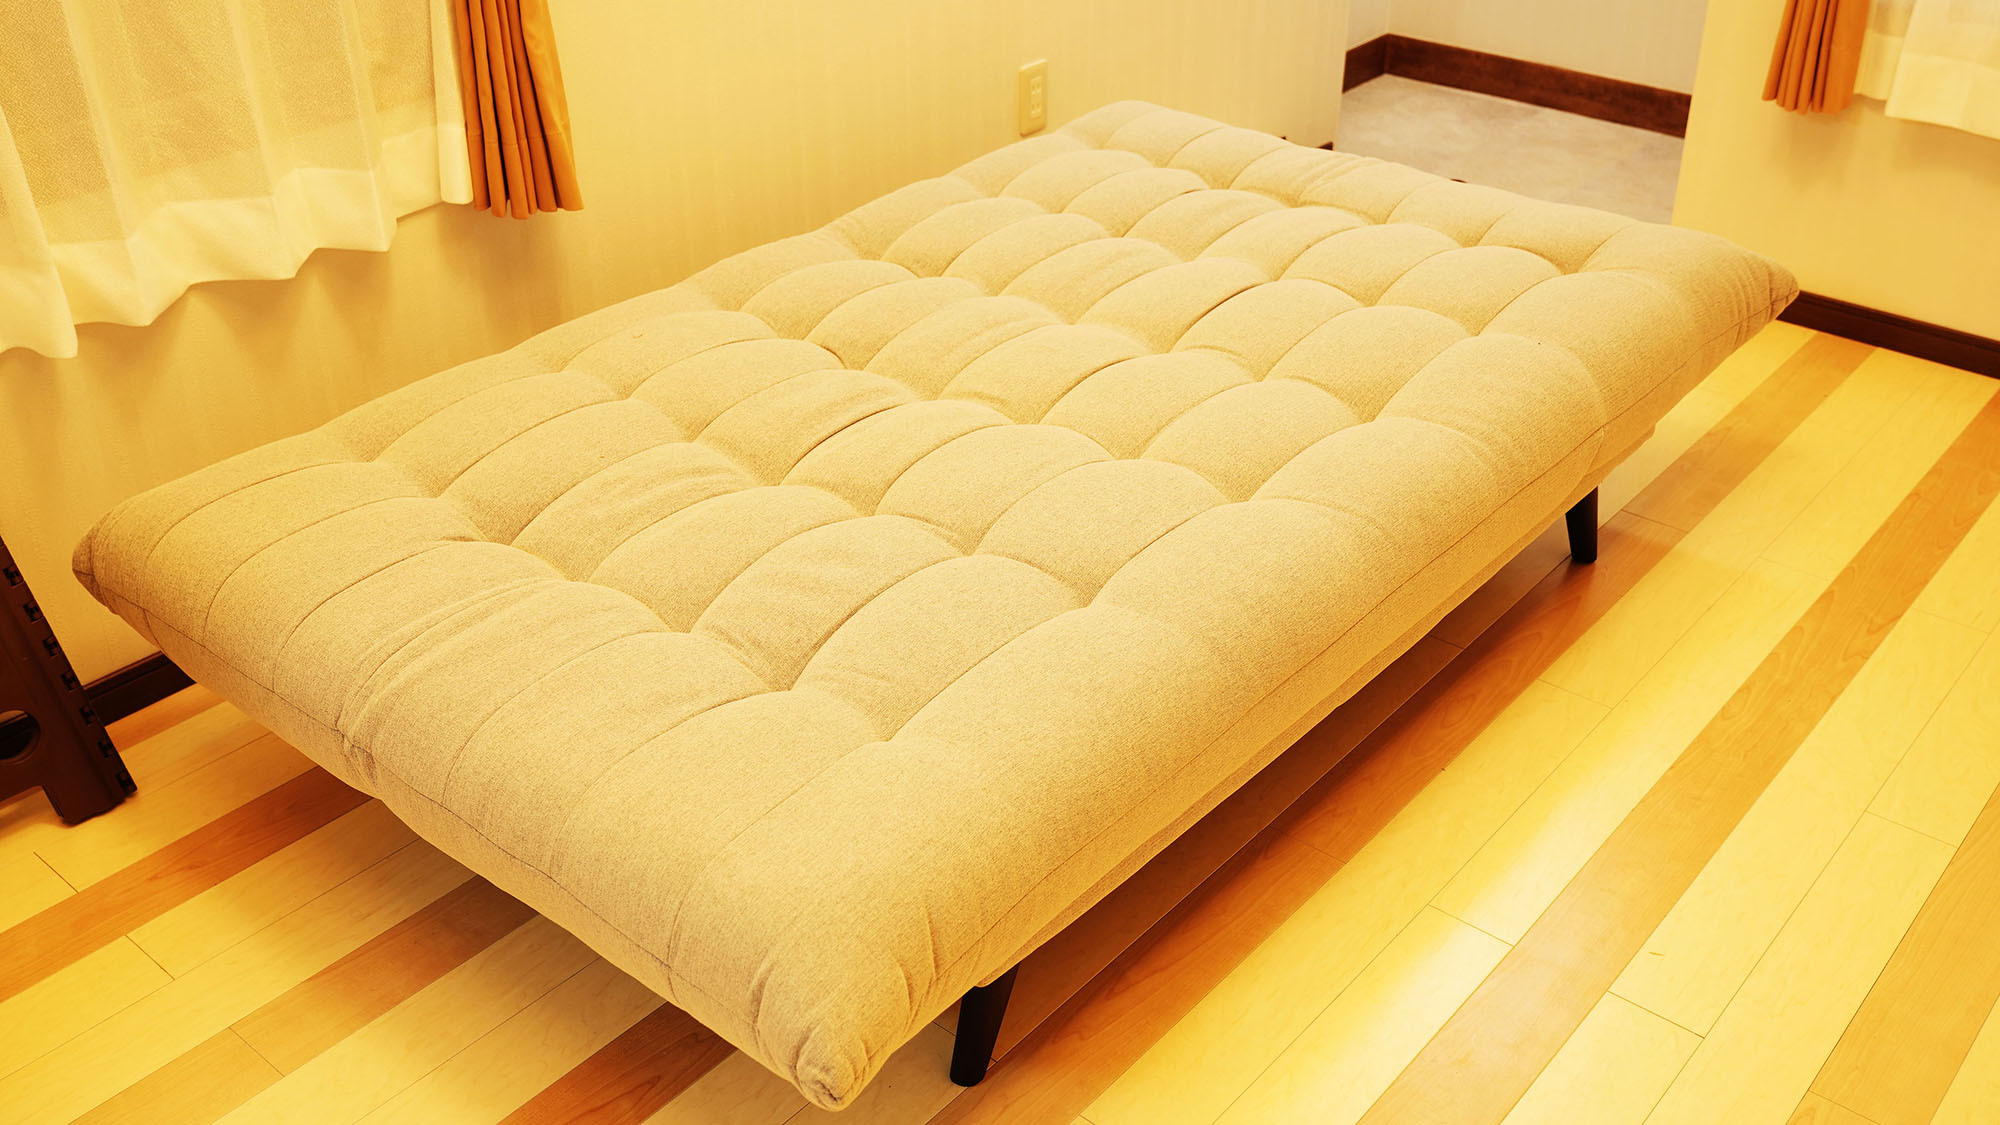 ・201号室：セミダブルサイズのソファベッド